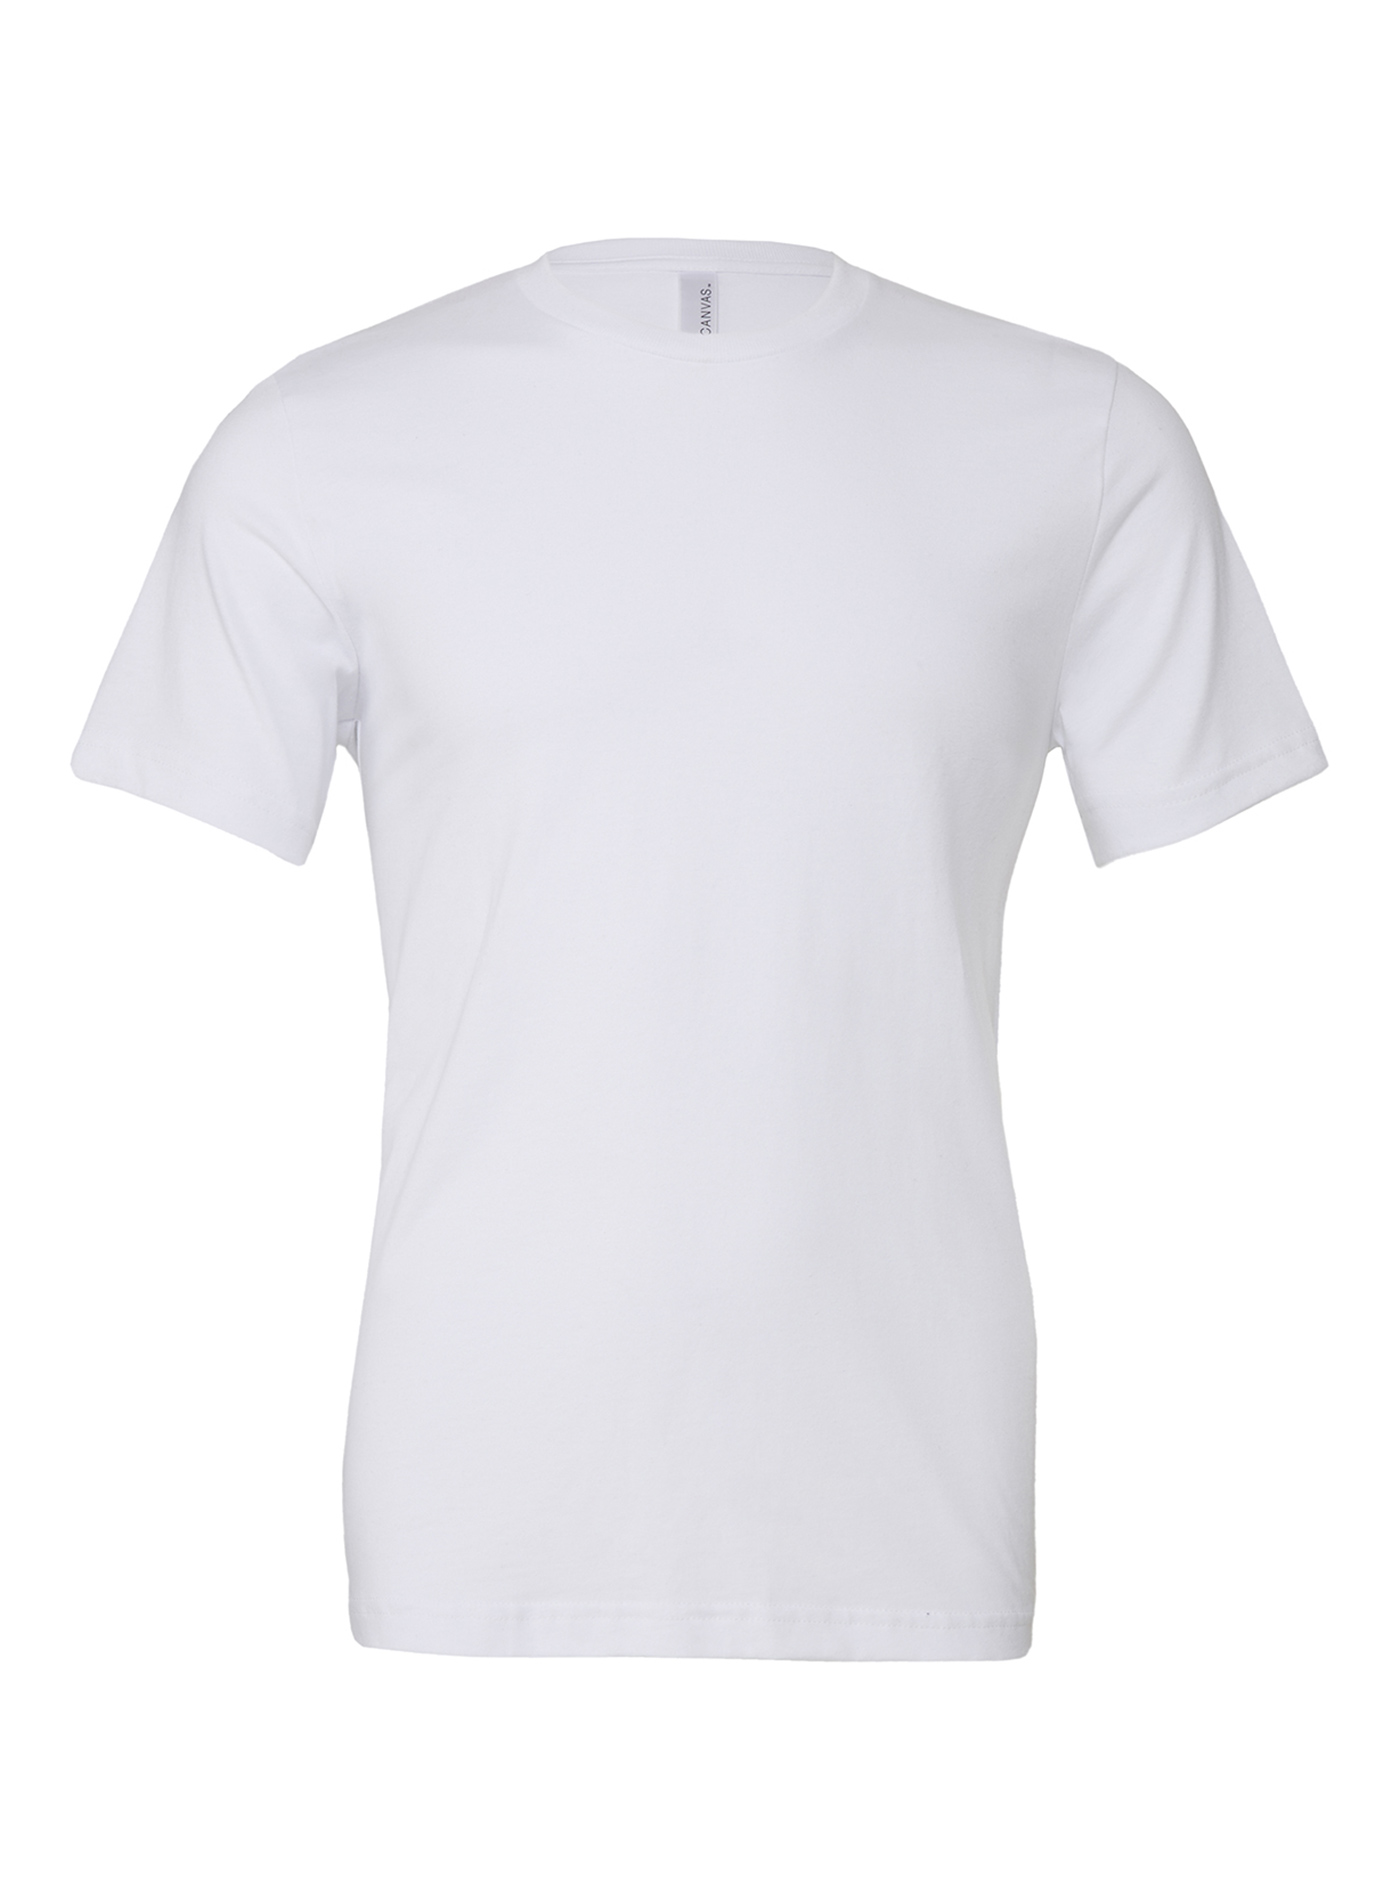 Unisex tričko Jersey - Bílá L